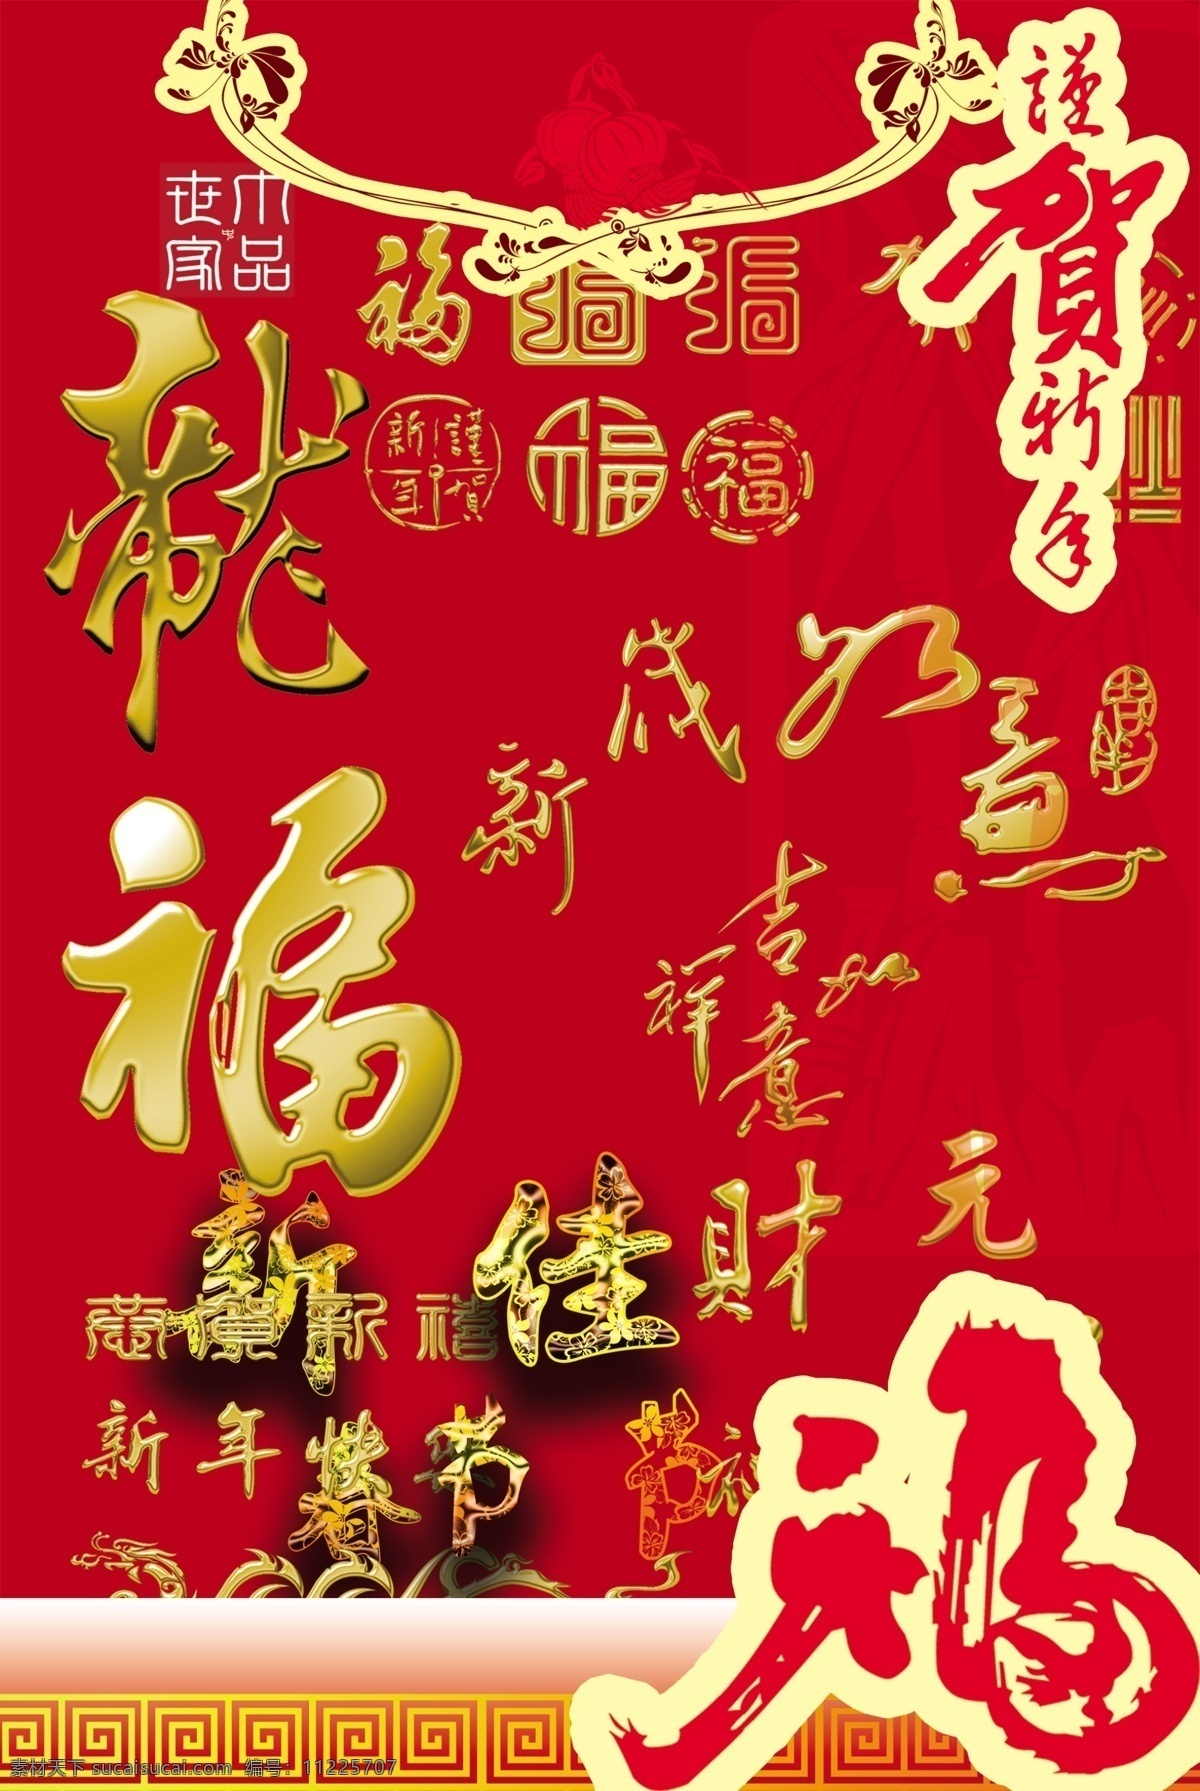 春节 分层 财 福 贺新年 吉祥如意 元等字设计